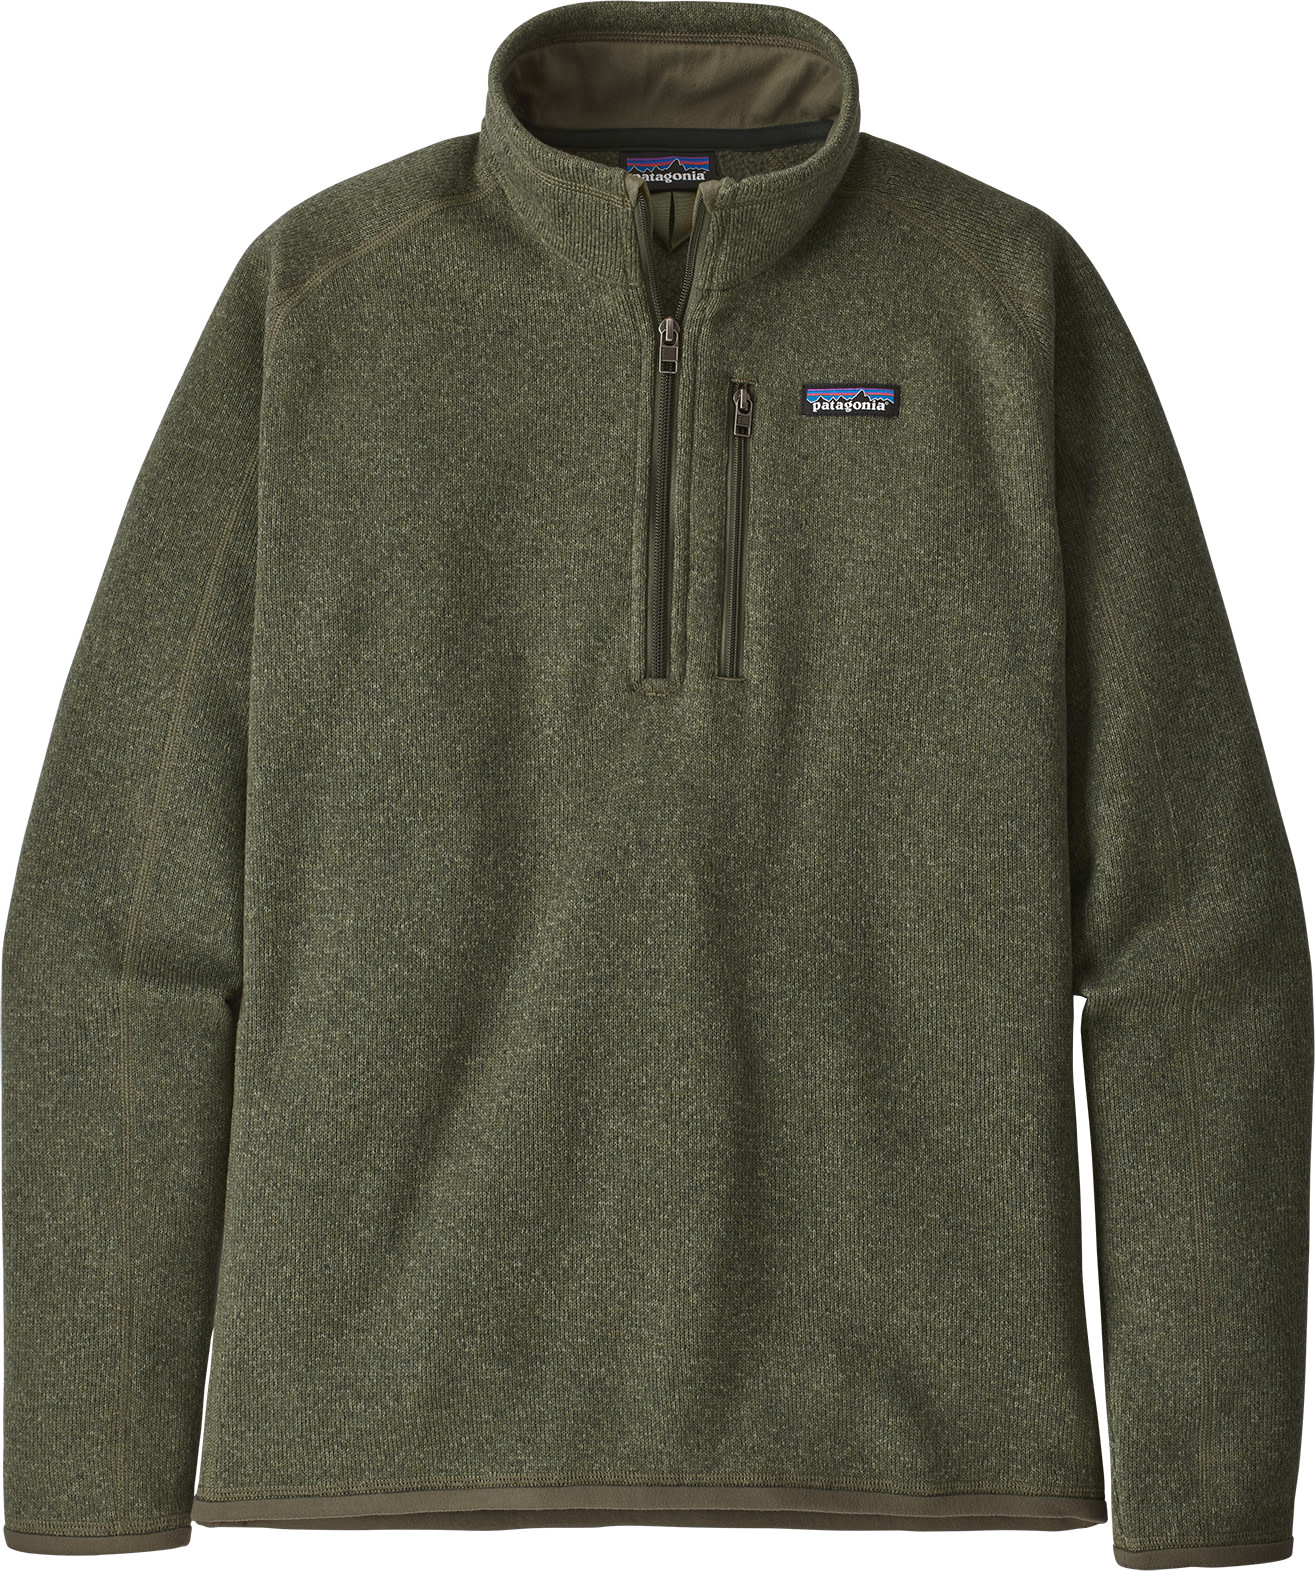 Patagonia Men's Better Sweater 1/4 Zip Fleece Industrial Green XL, Industrial Green